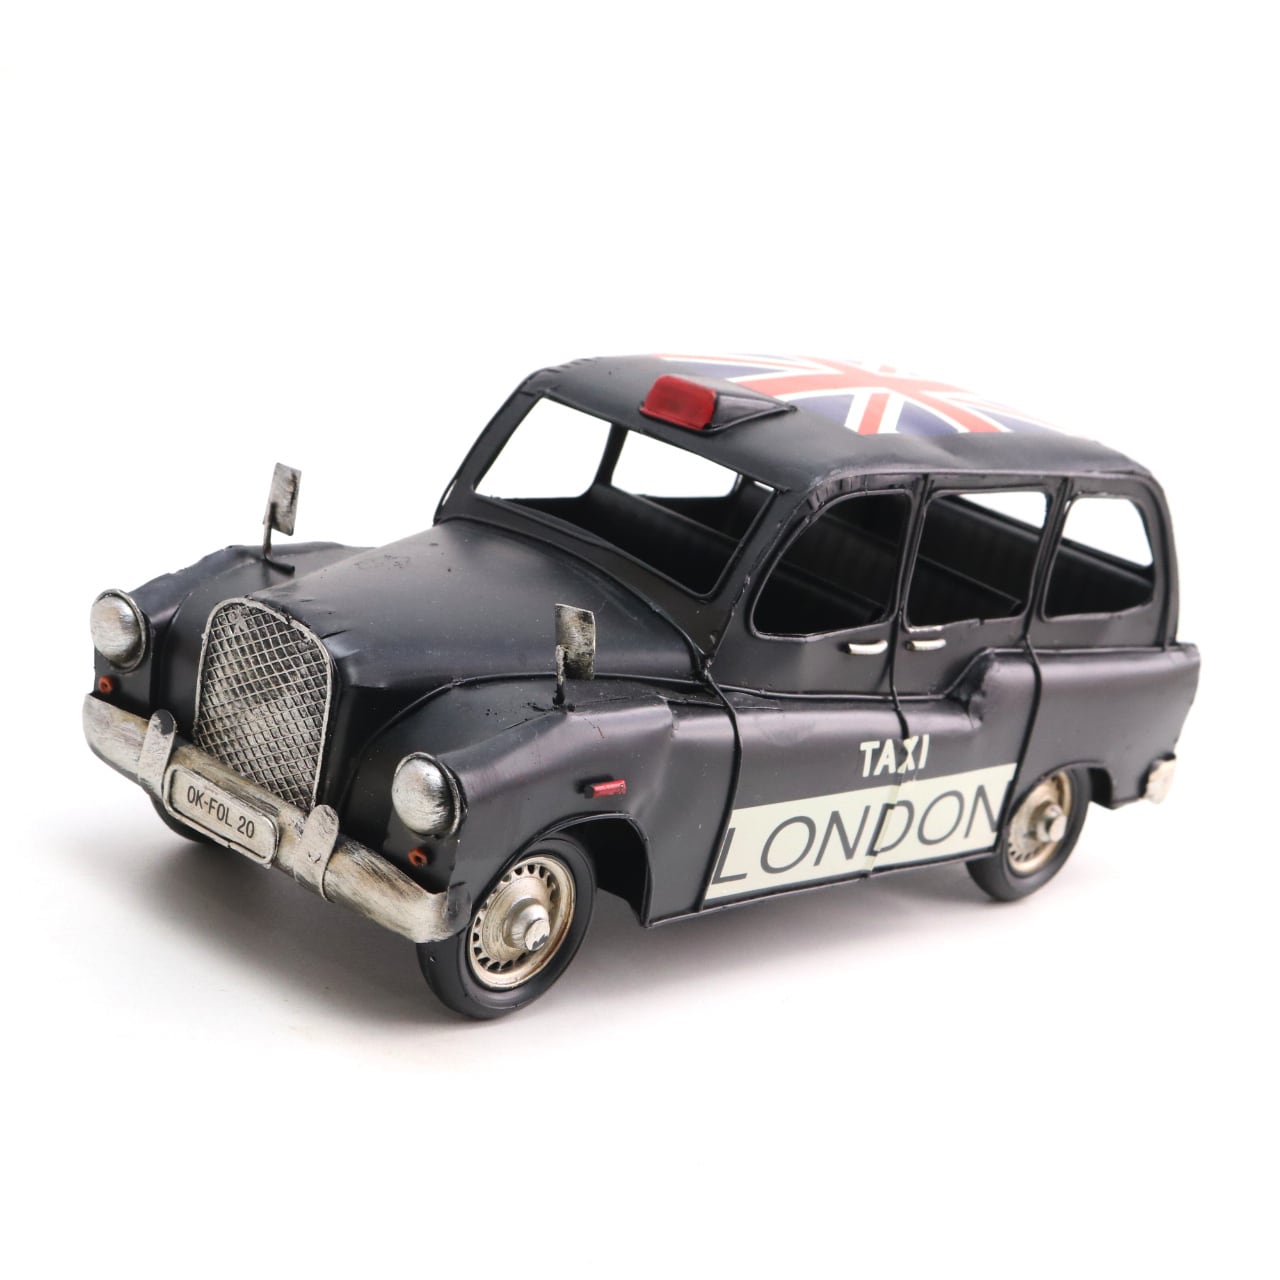 ブリキ おもちゃ タクシー イギリス ロンドン オブジェ 置物 ...